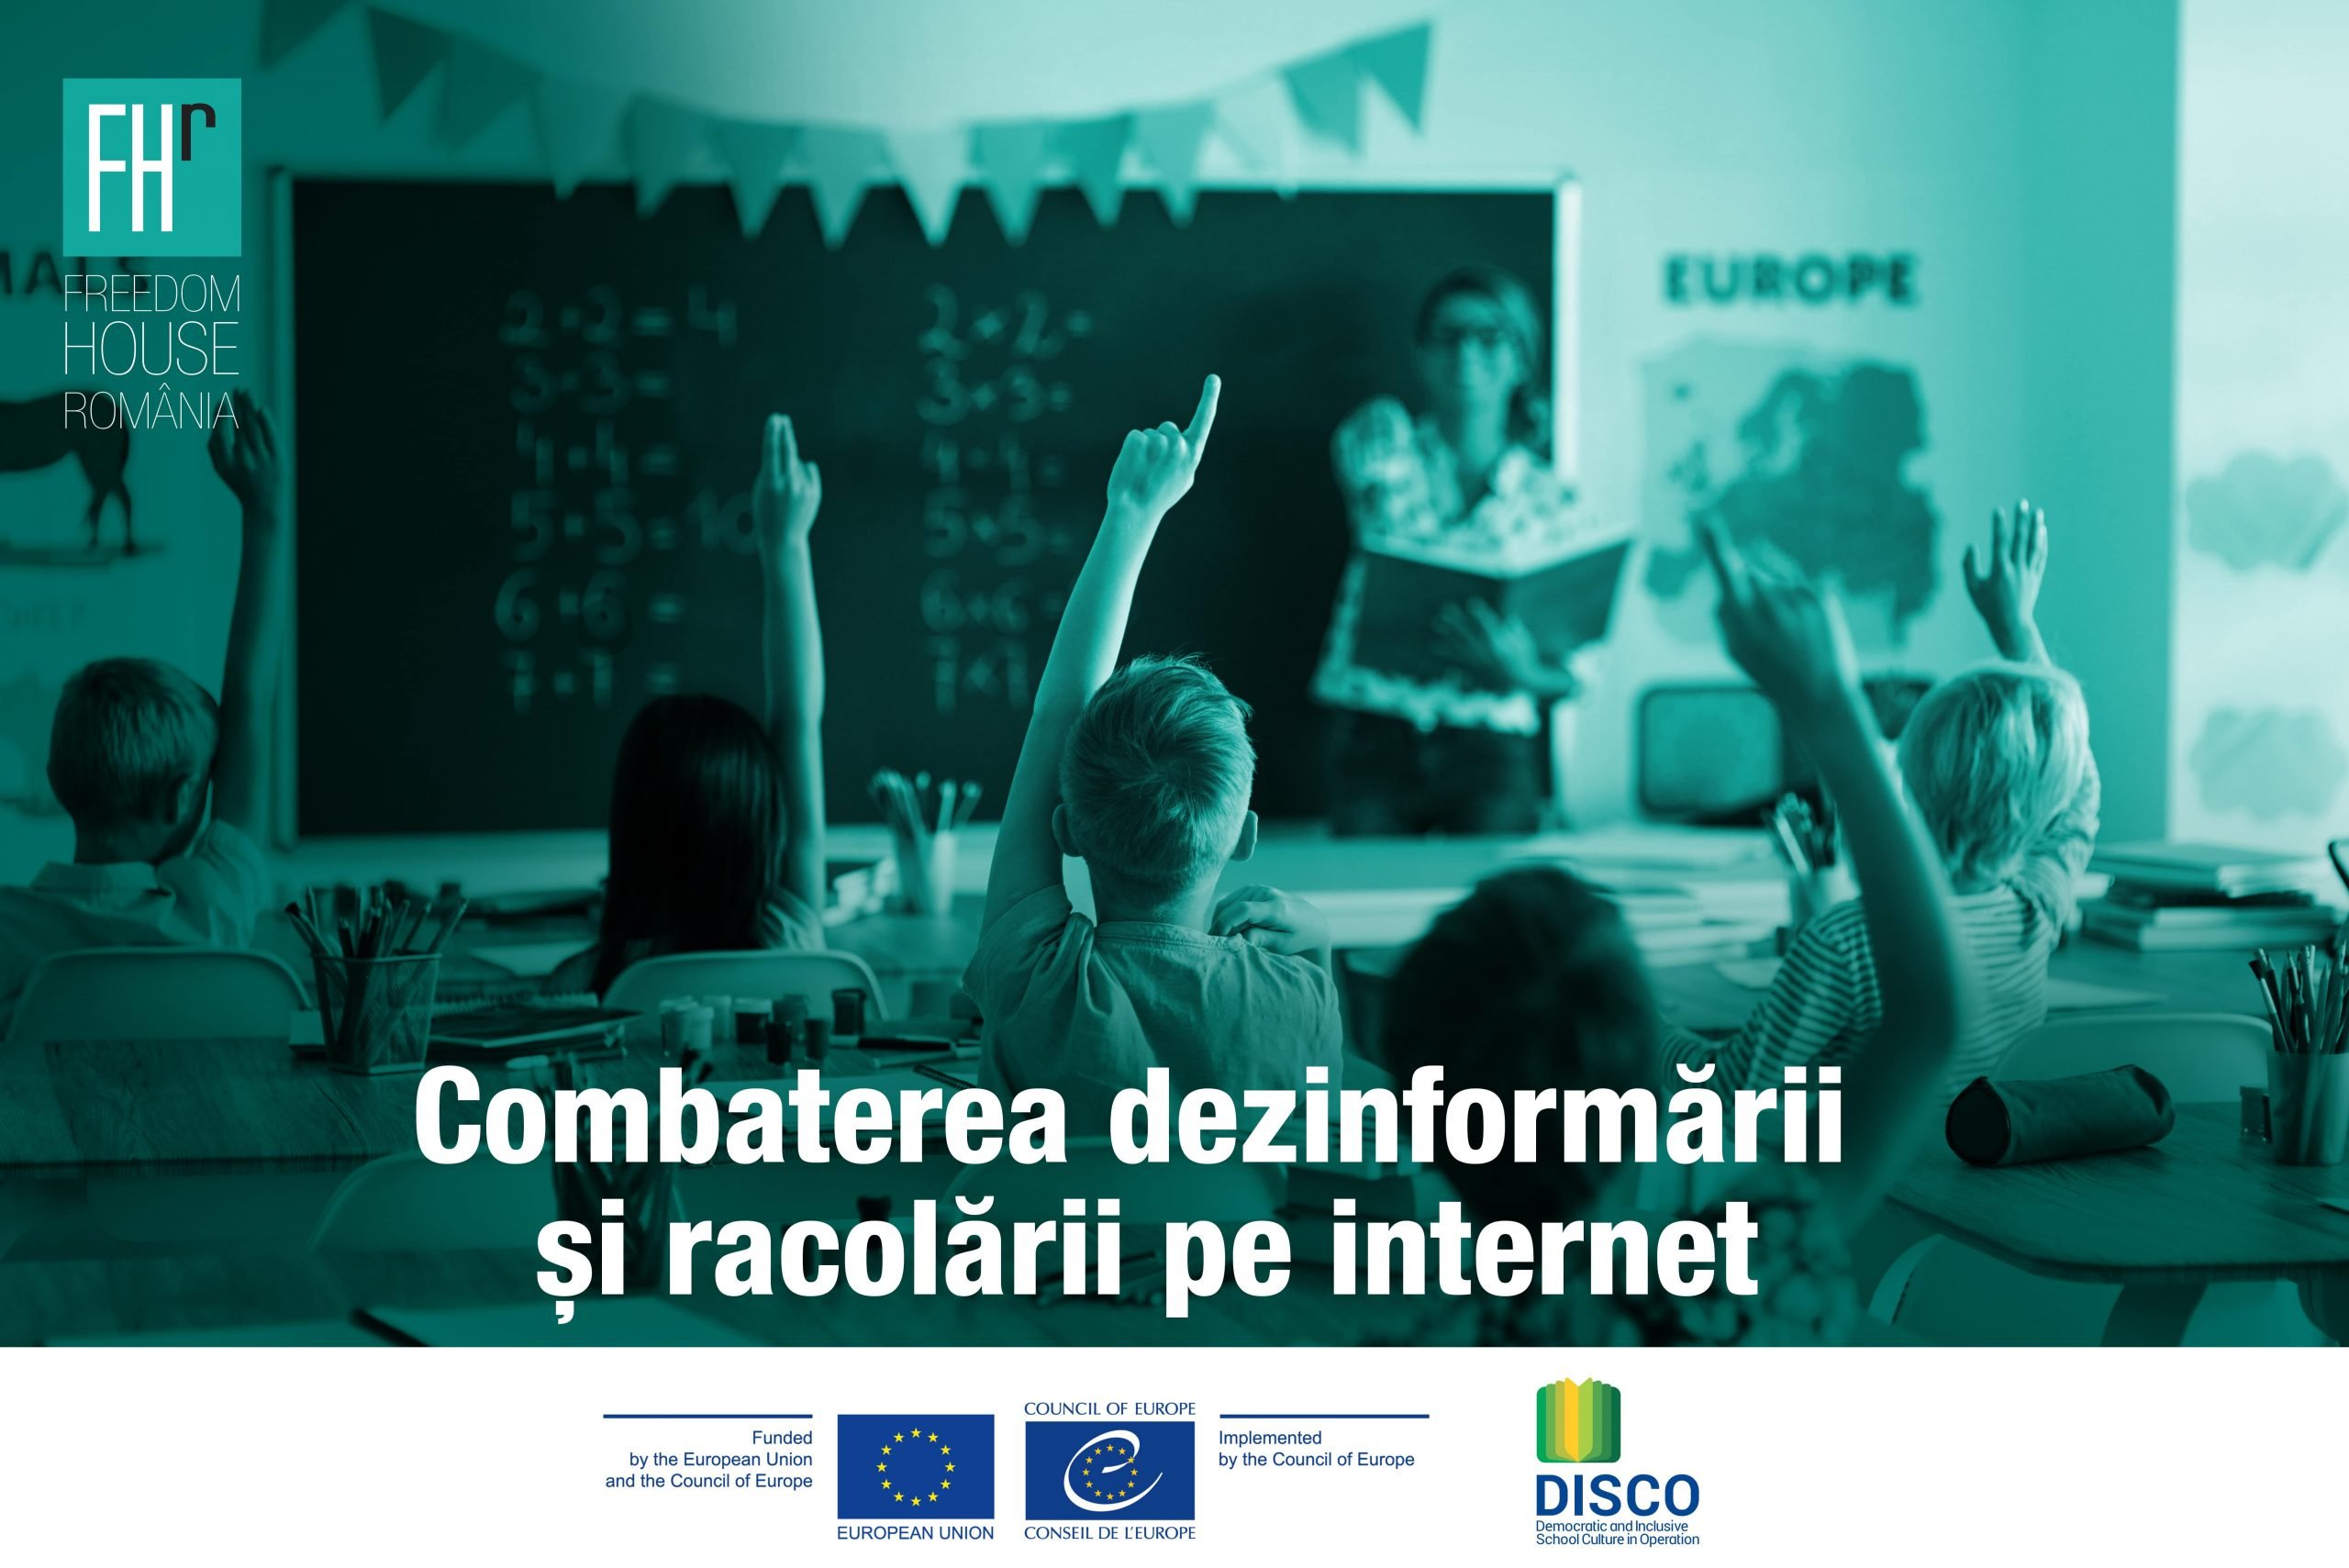  Freedom House România lansează un nou proiect privind combaterea dezinformării și a racolării online